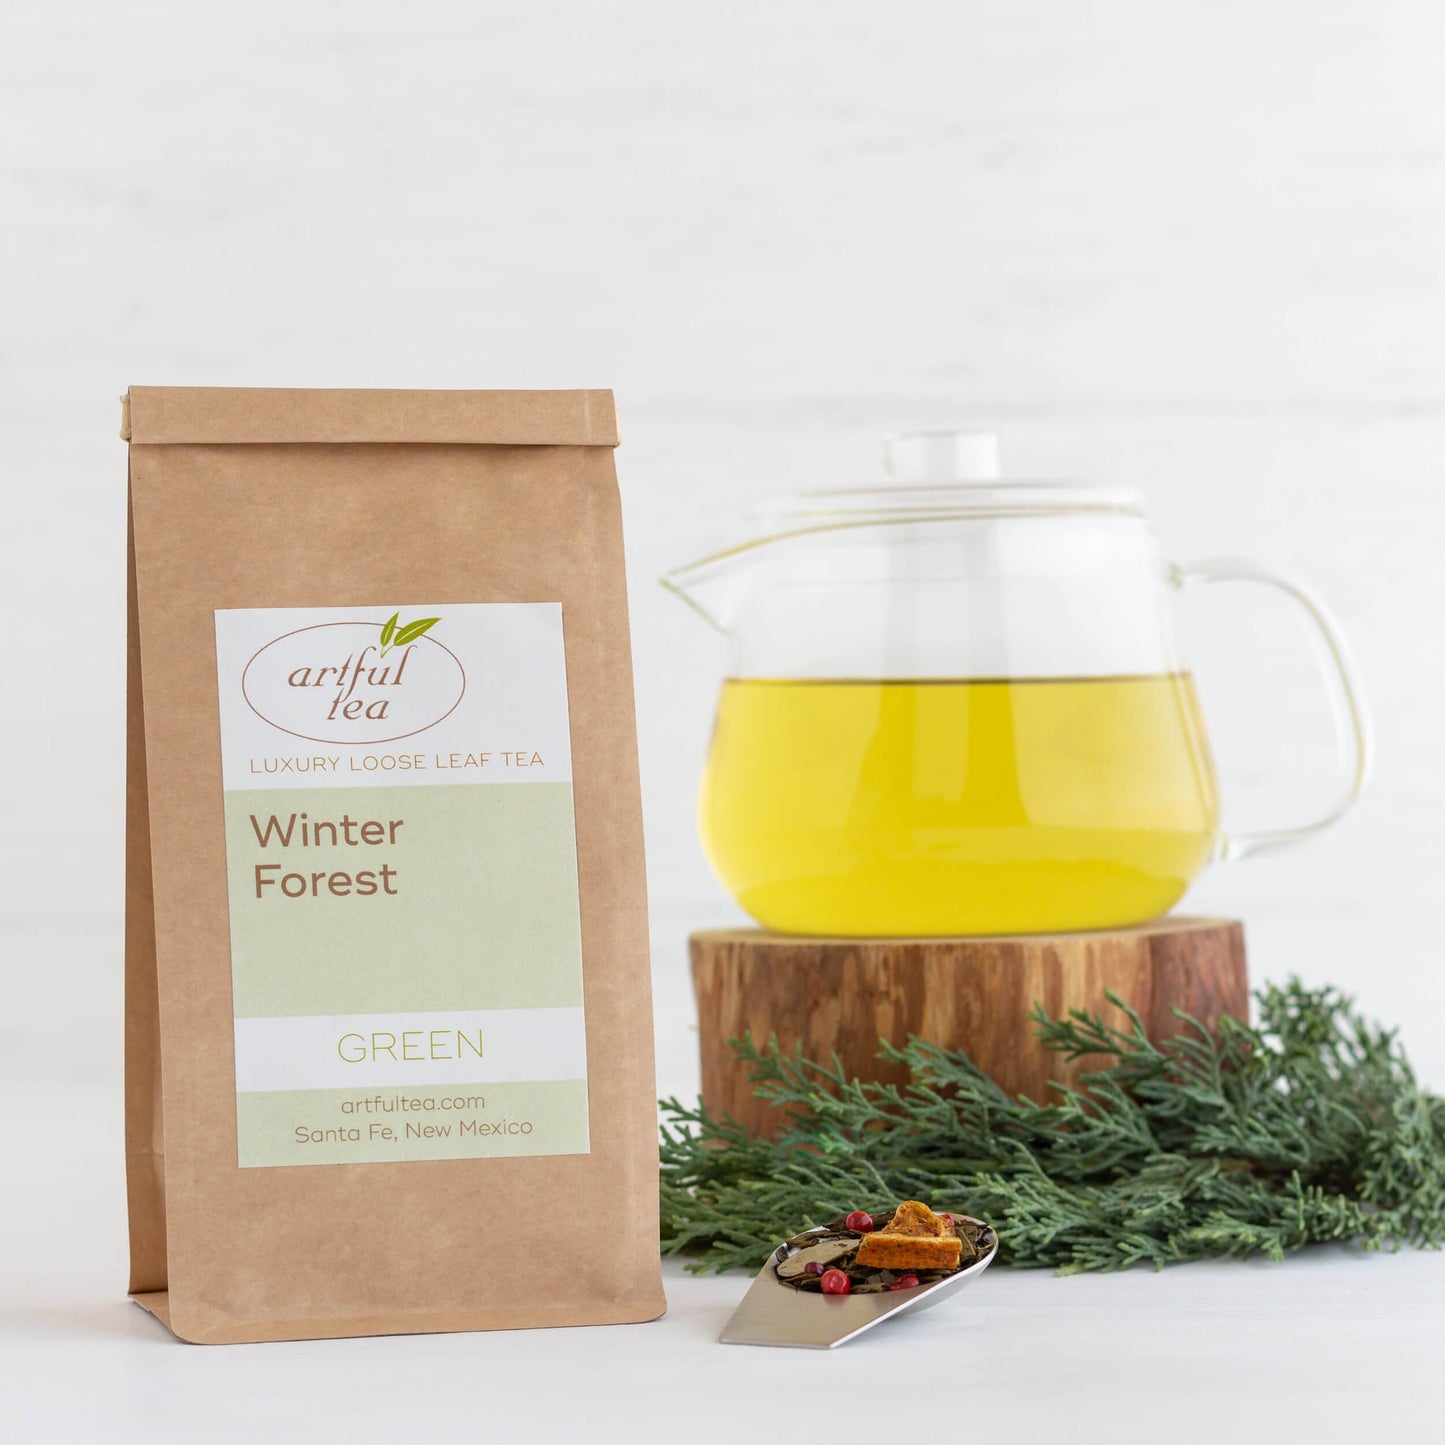 Winter Forest Green Tea